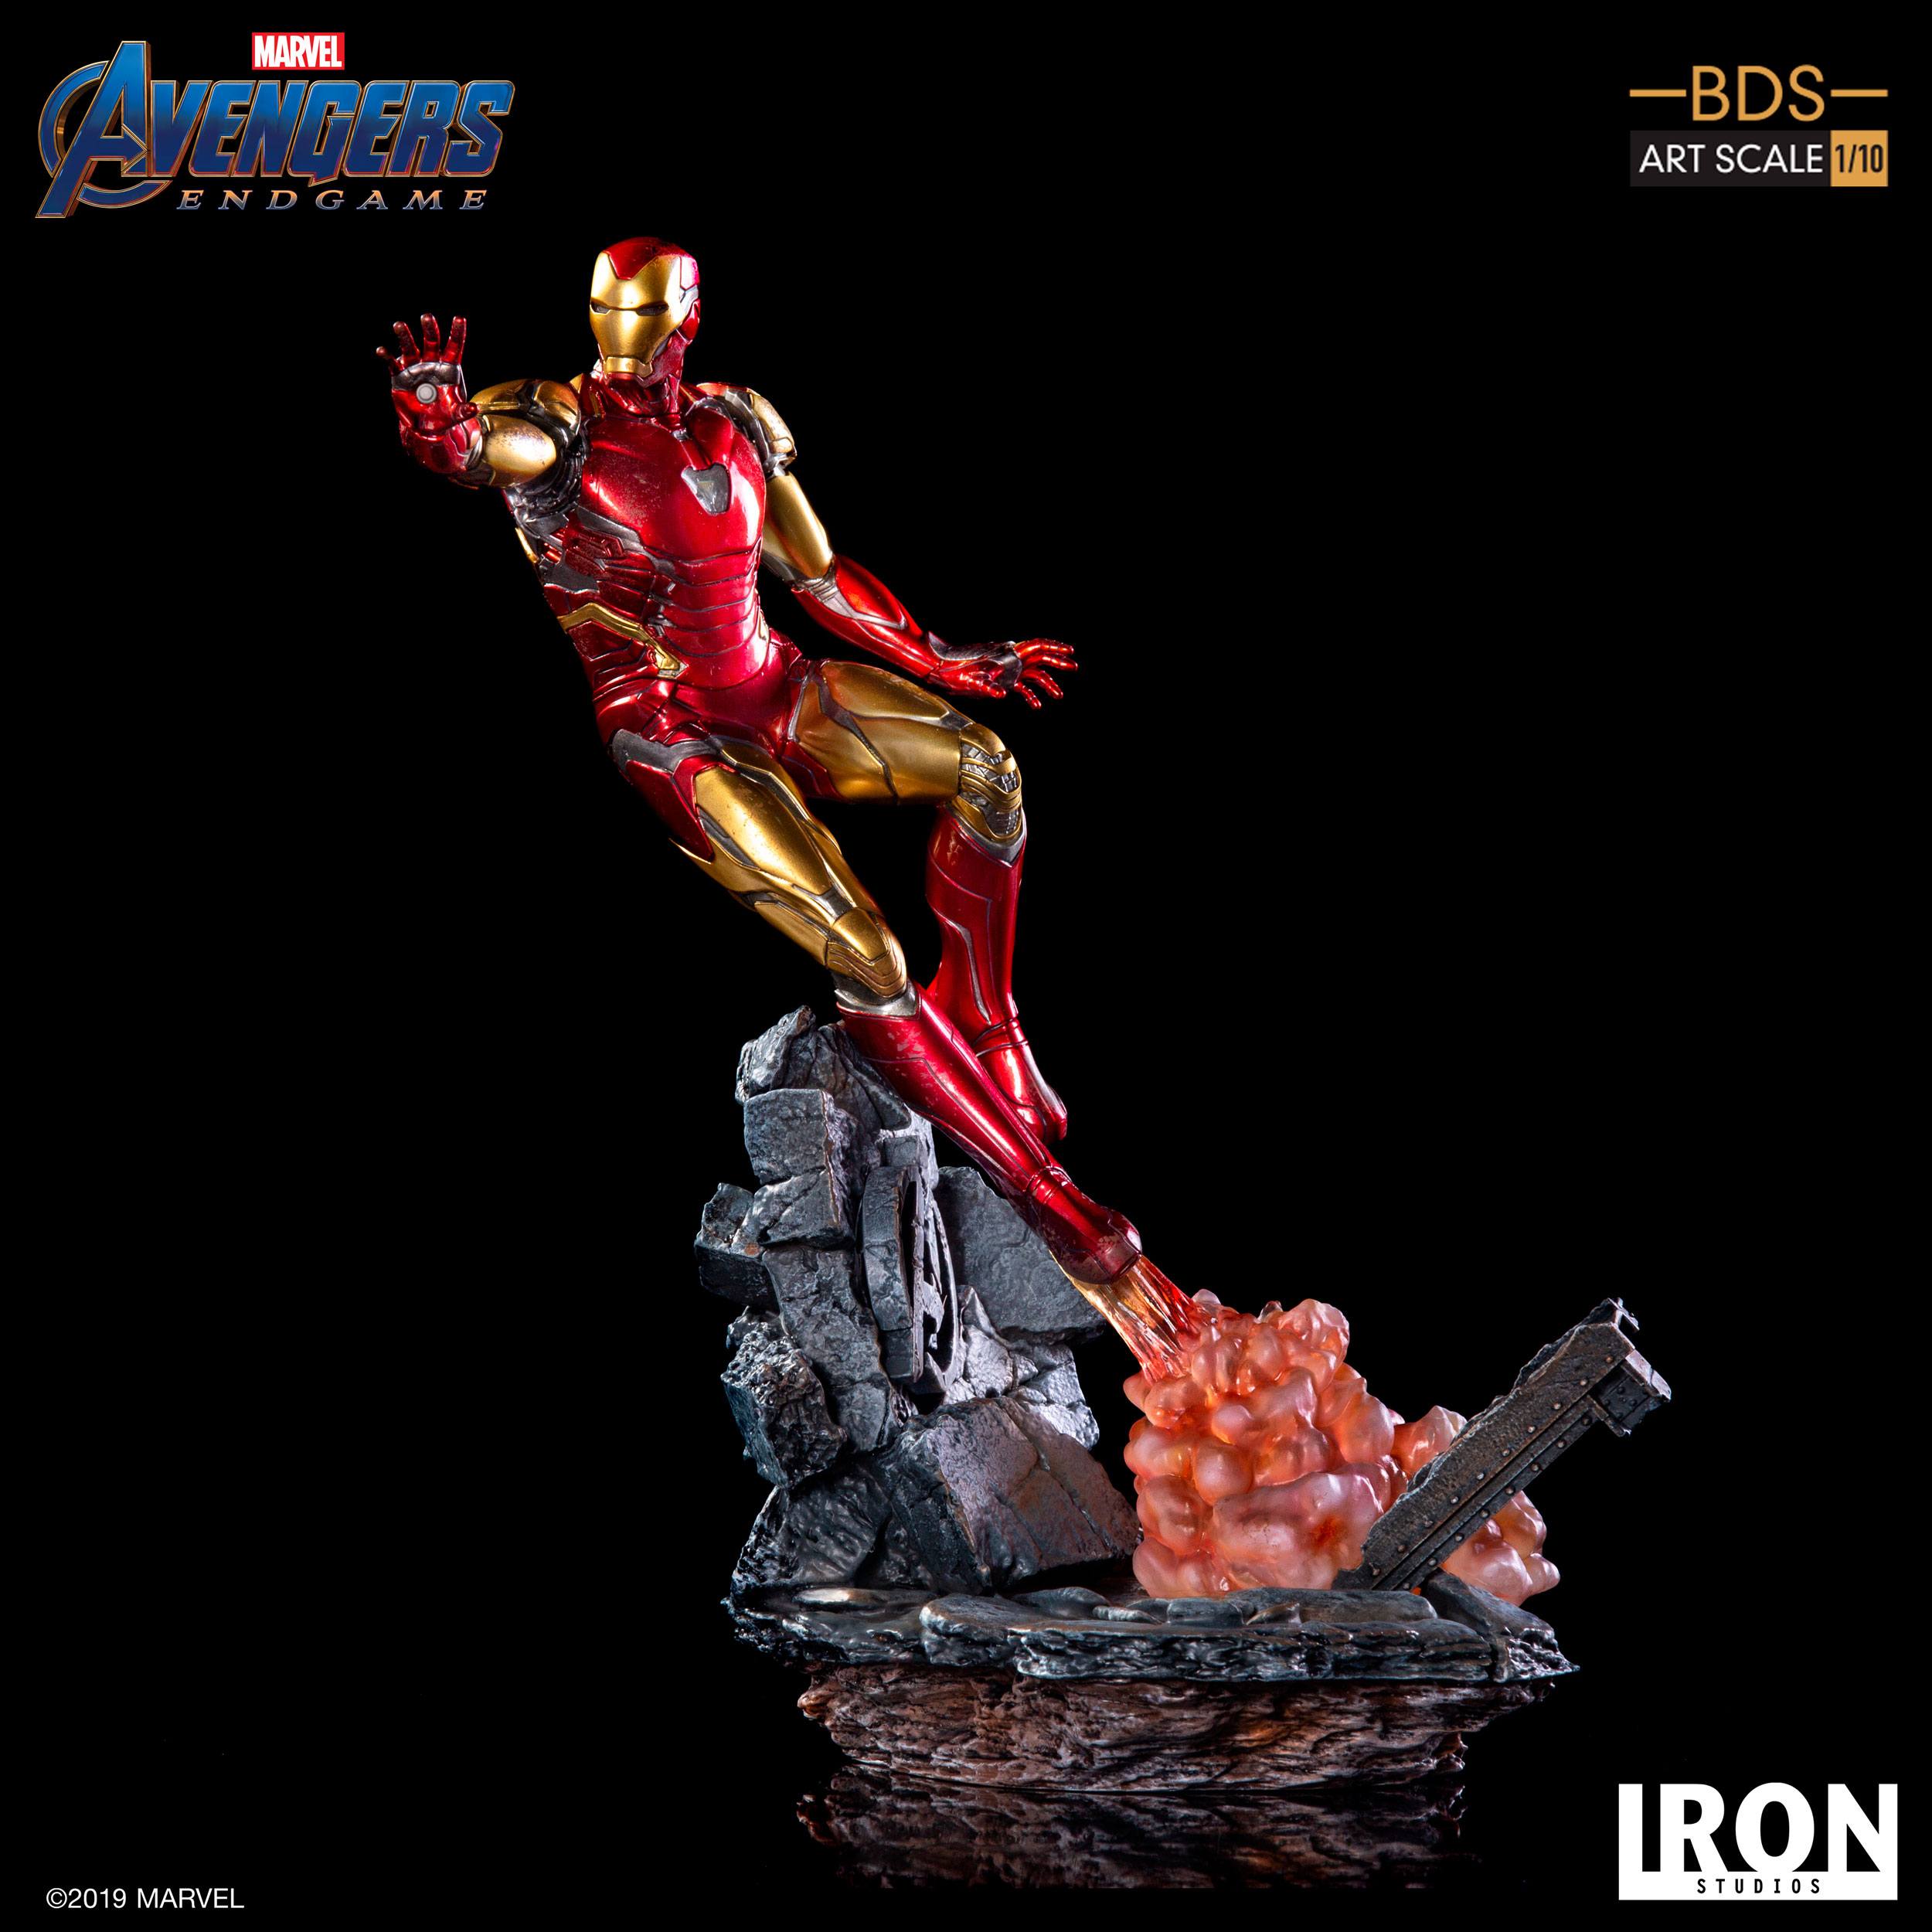 Viento Con rapidez Villano Estatua Iron Man Mark LXXXV (29 cm) - Avengers: Endgame - BDS Art Scale  1/10 | attaboy Collectibles